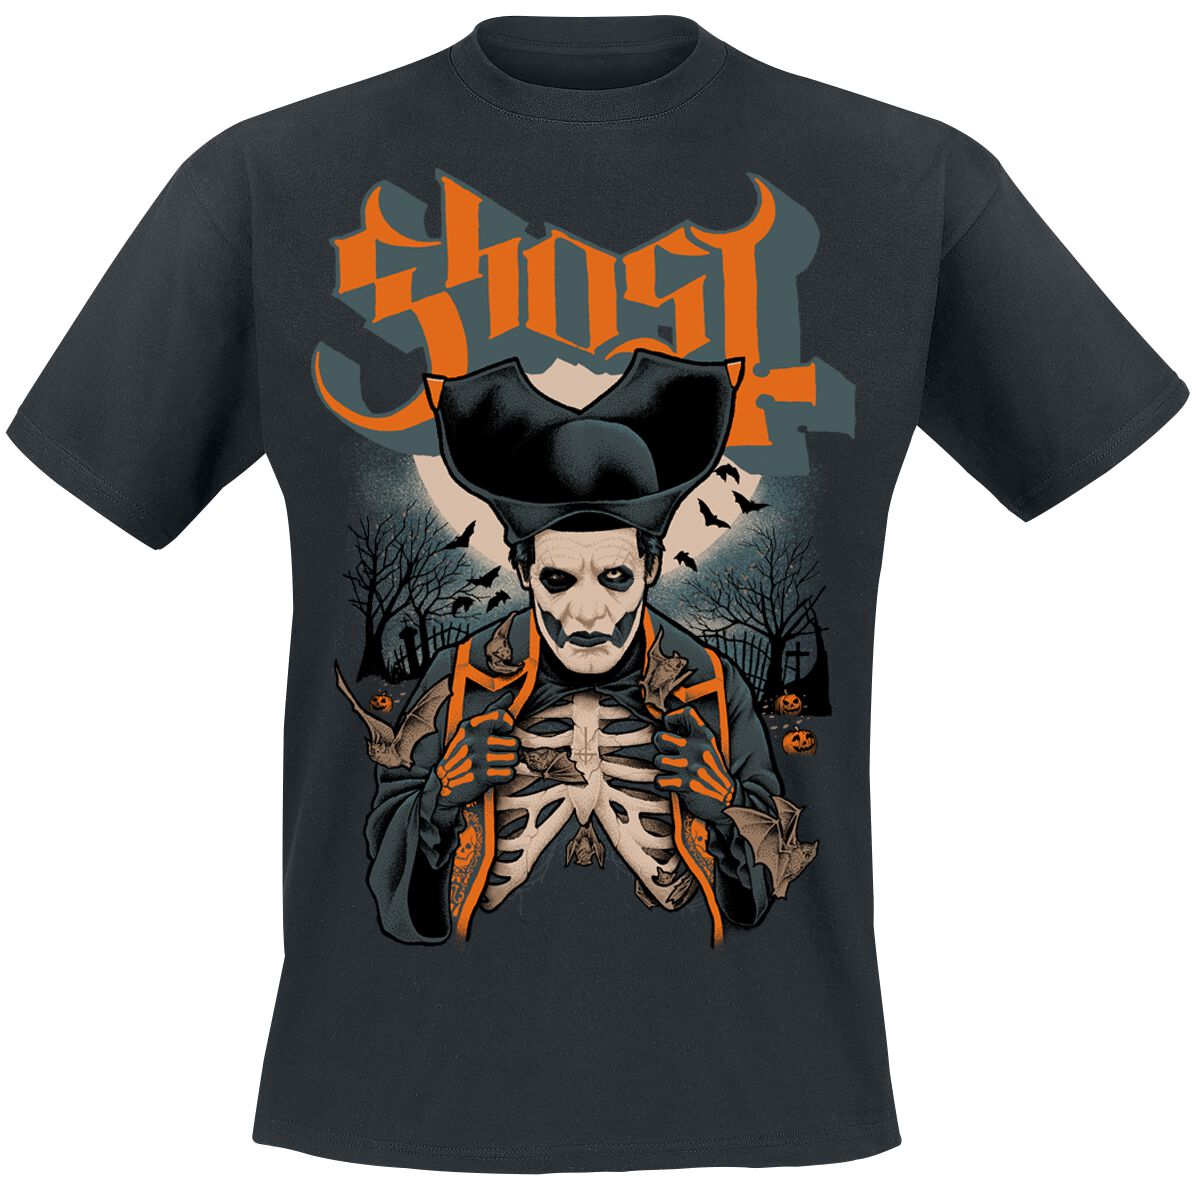 Ghost T-Shirt - Ribs & Bats - S bis 4XL - für Männer - Größe L - schwarz  - Lizenziertes Merchandise!